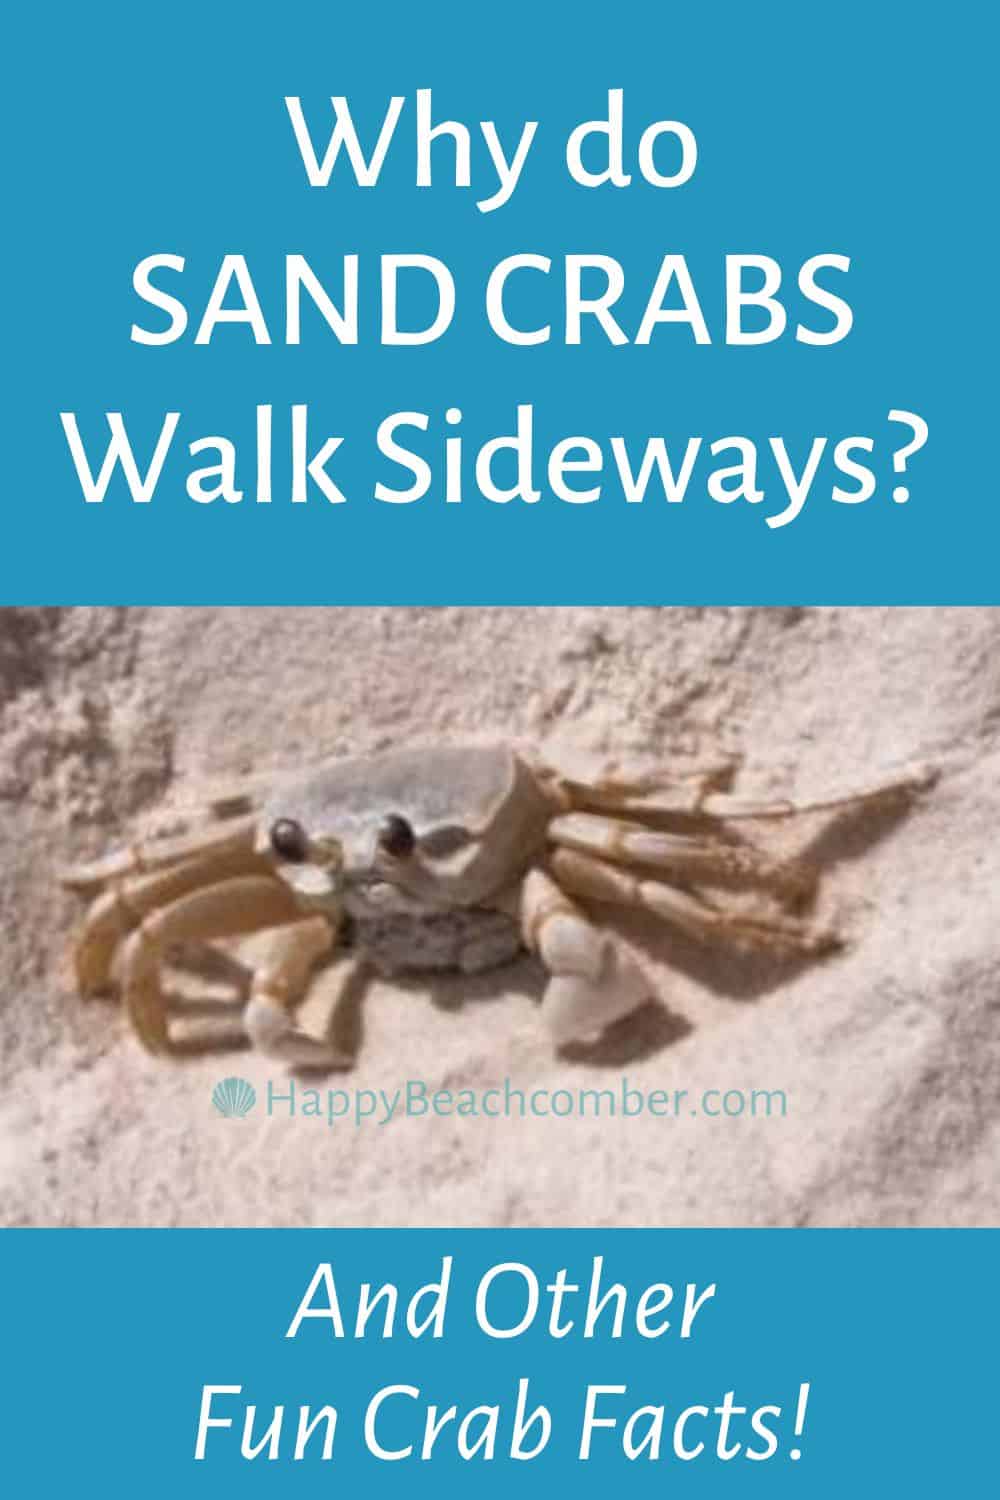 Why do sand crabs walk sideways?